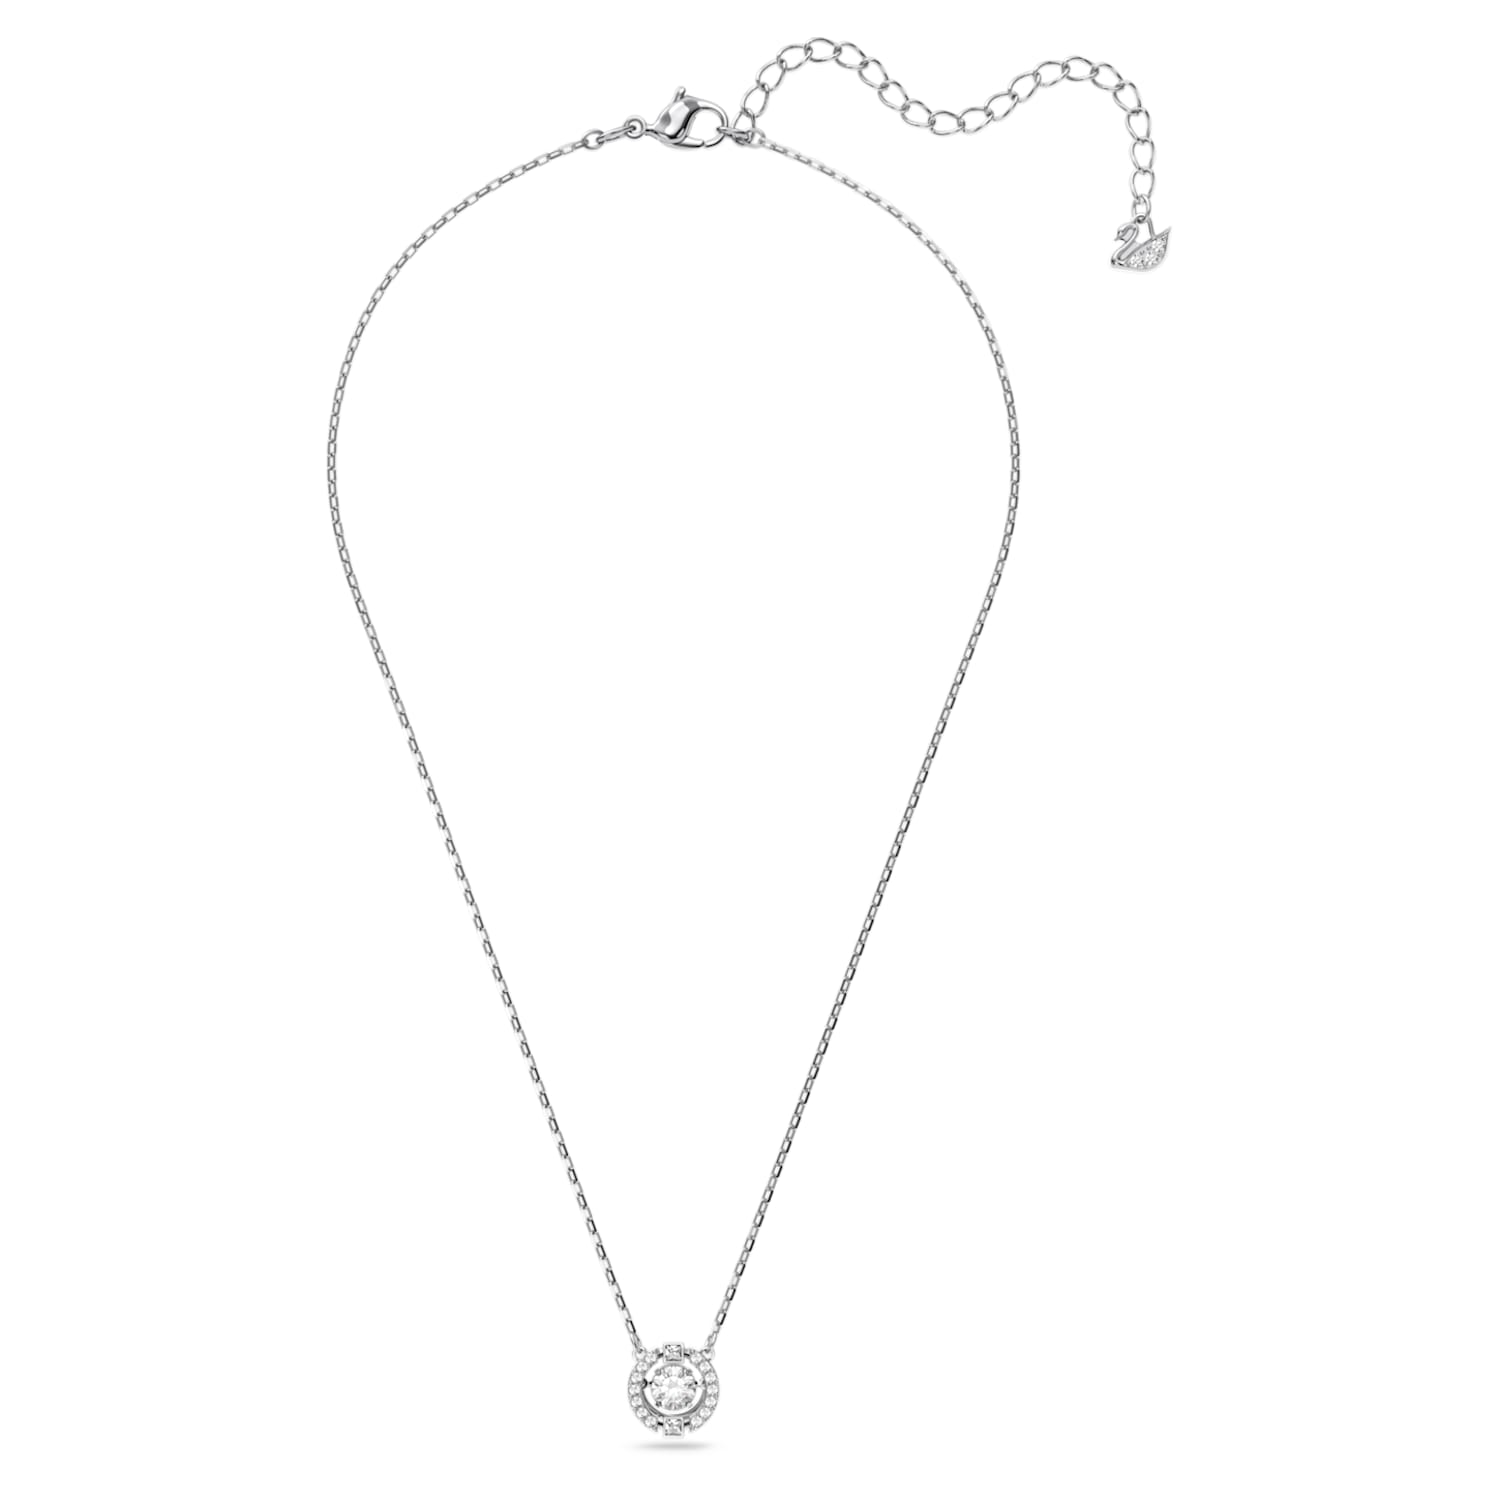 Swarovski Sparkling Dance necklace, Round, White, Rhodium plated 